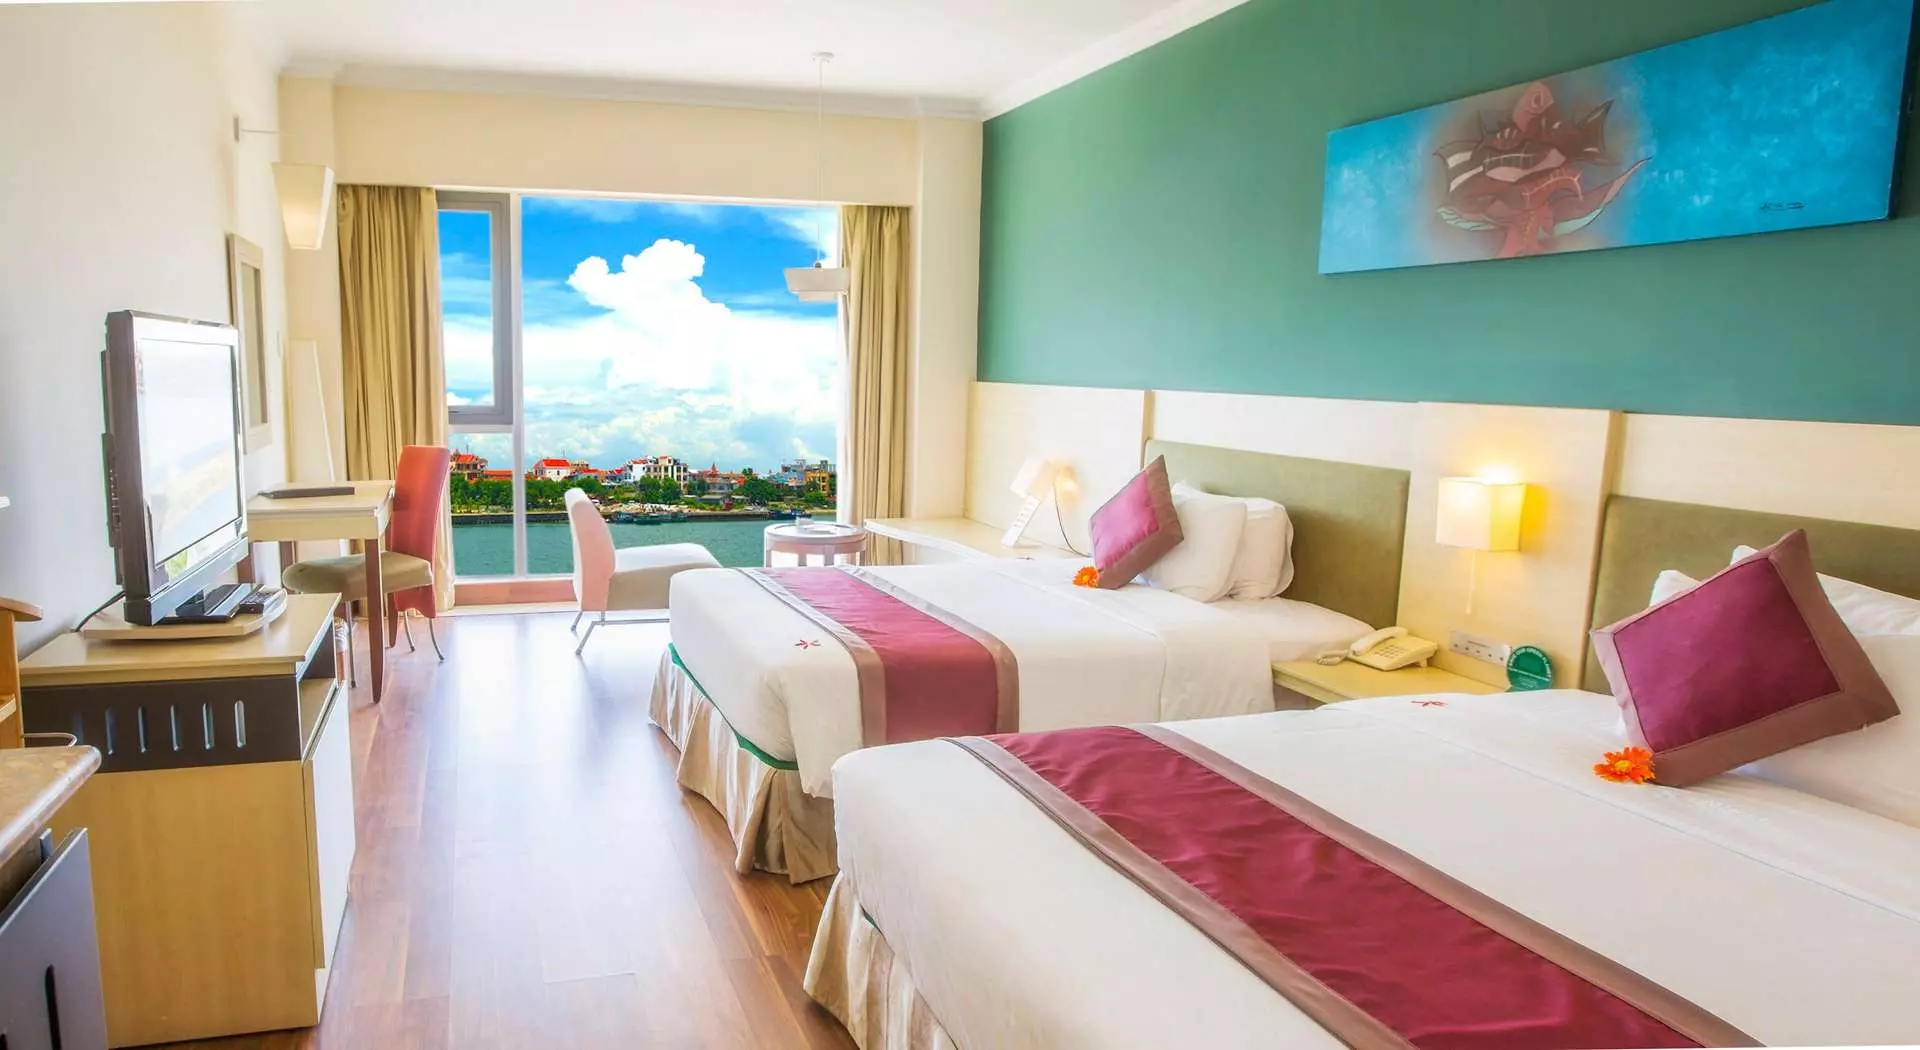 Saigon Quang Binh Hotel - Khách sạn ven sông Nhật Lệ ở Đồng Hới